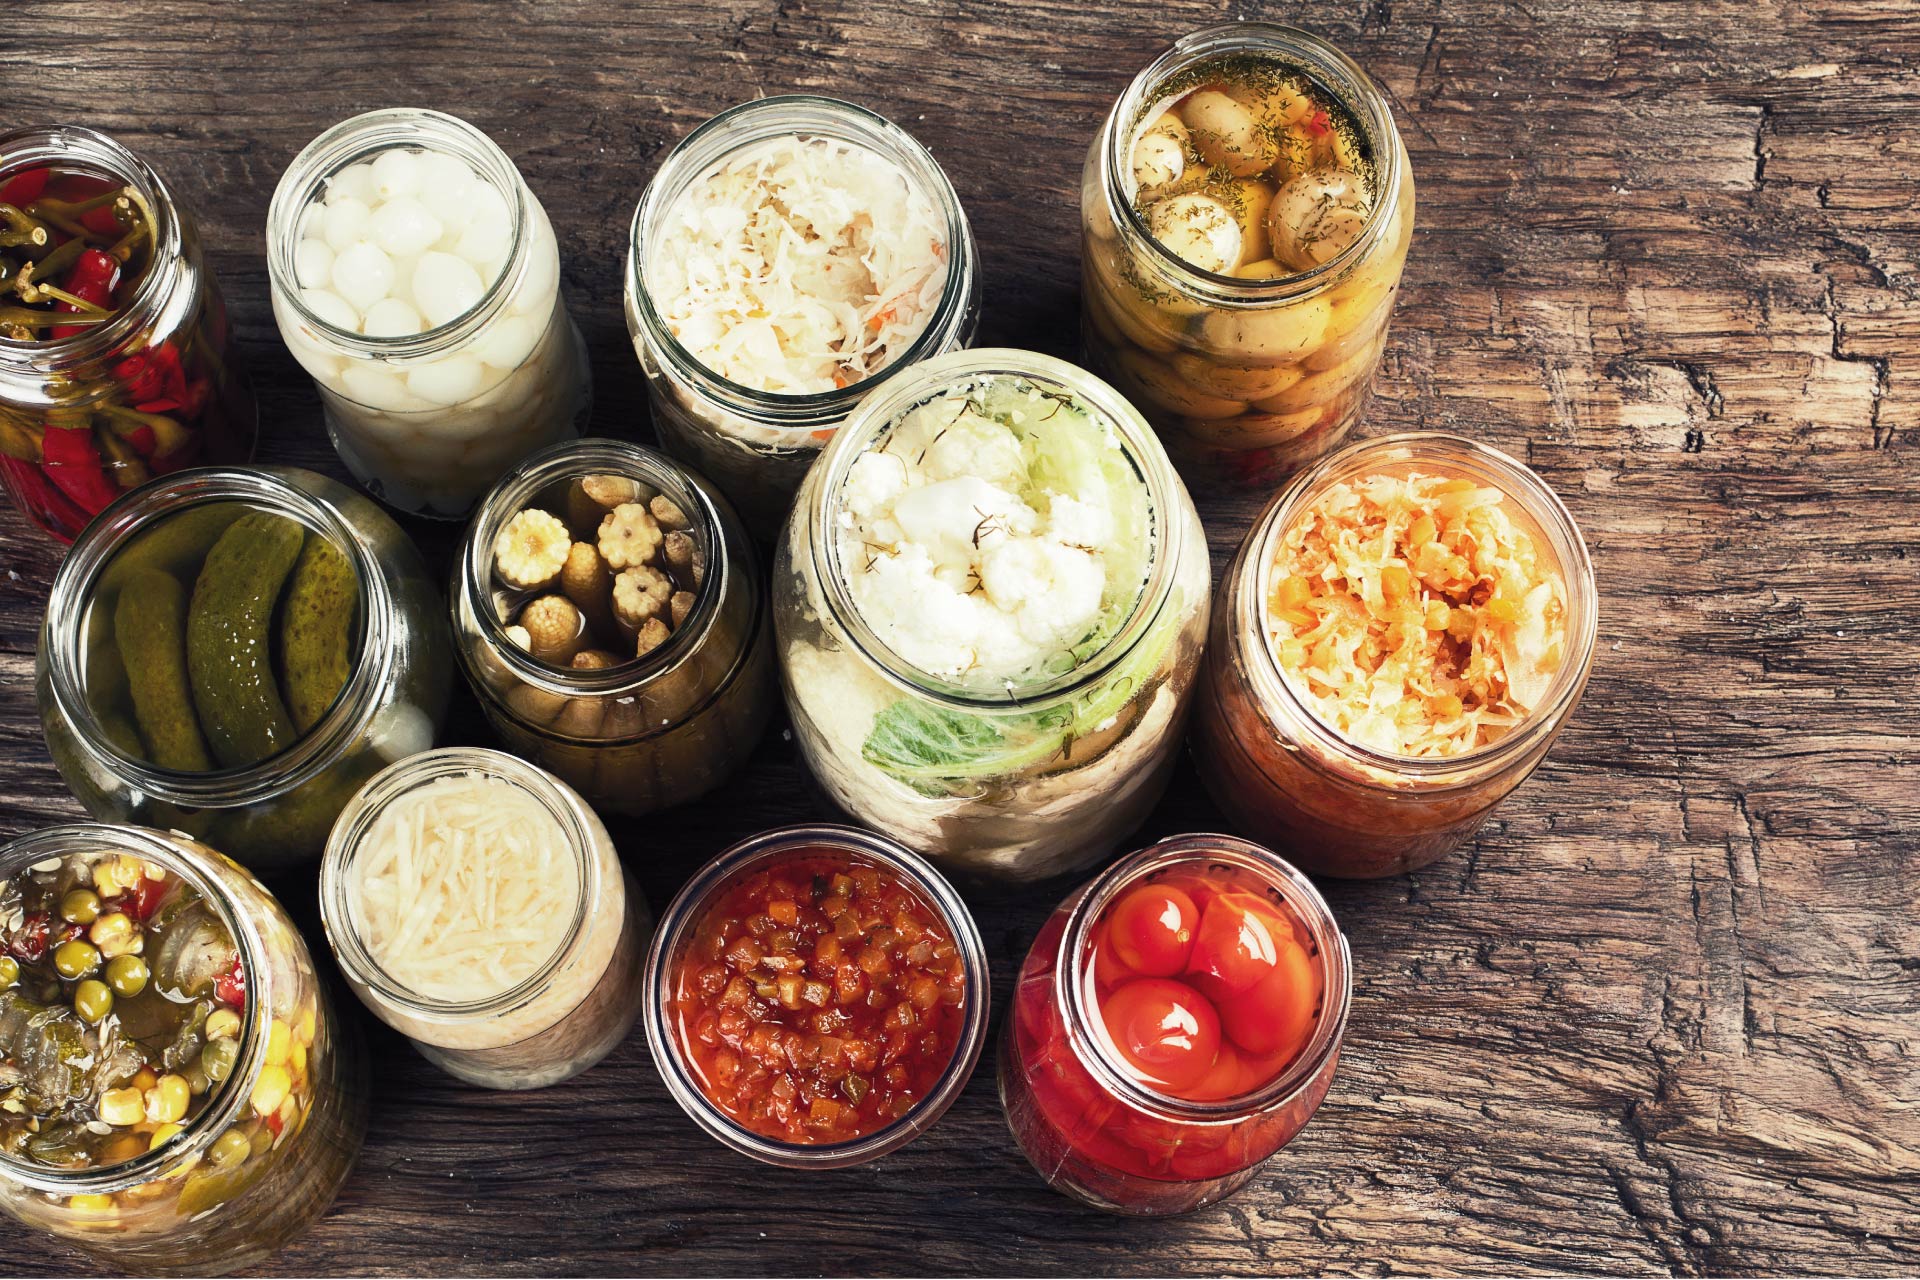 Ushqimet e fermentuara: çfarë janë dhe çfarë përfitimesh sjellin